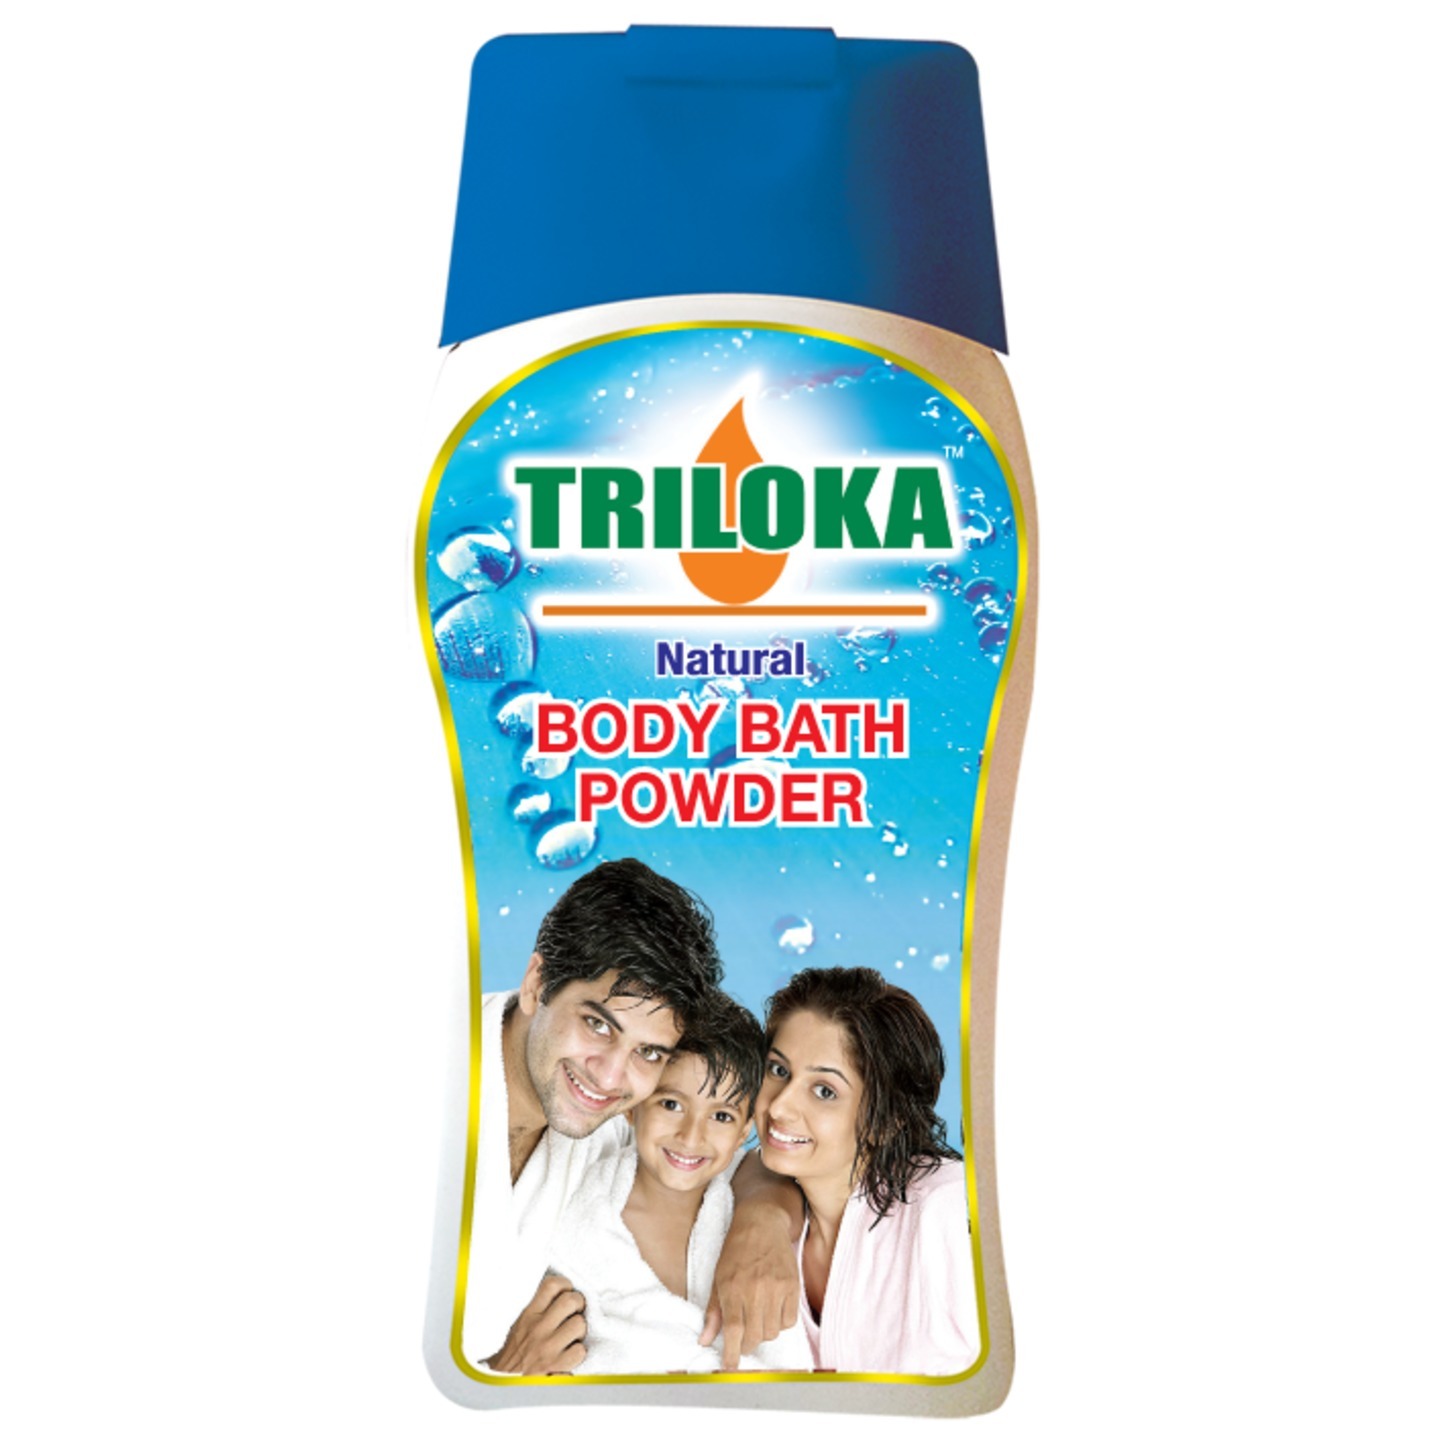 New Triloka Body Bath Powder